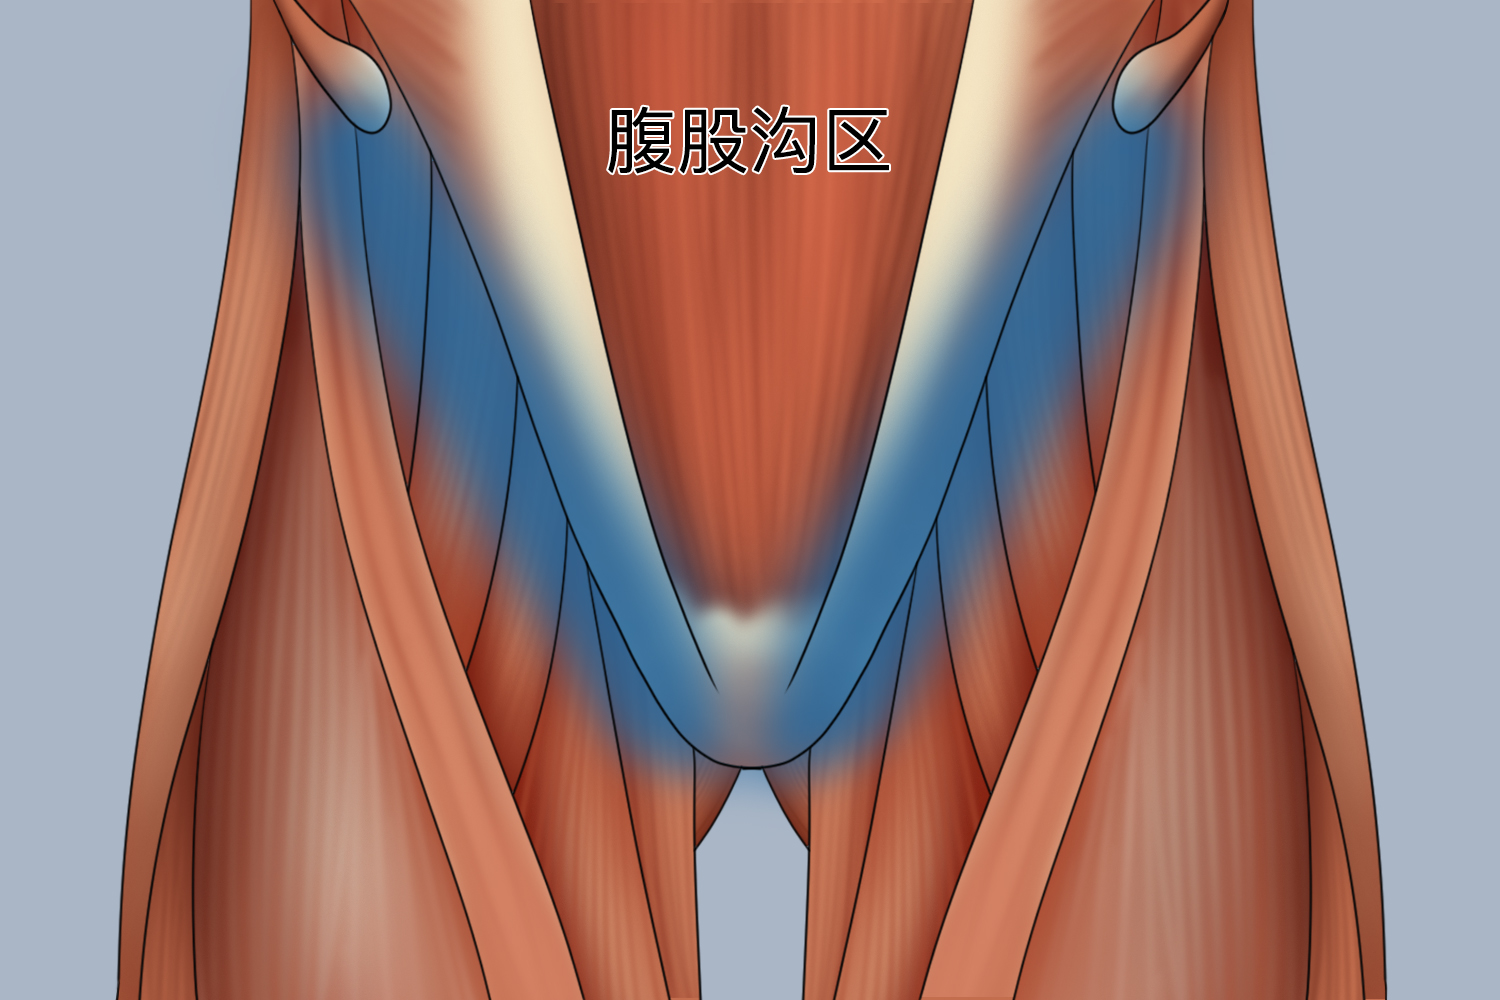 形区域,其上界为从髂前上棘至腹直肌外侧缘的水平线,下界为腹股沟韧带